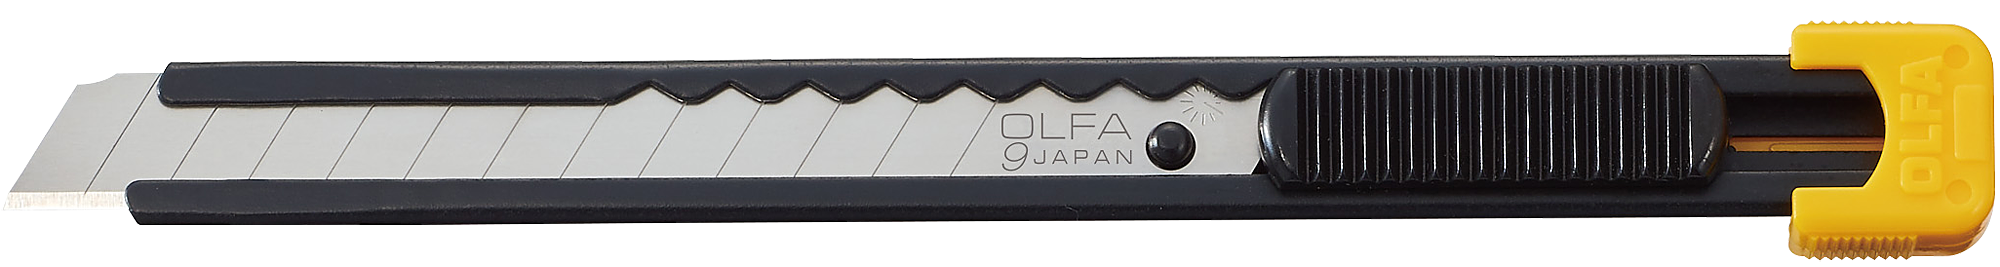 Нож монтажный, сдвижная фиксация, лезвие: 9 мм / выдвижное / сегментированное / отламывающееся, OLFA S (OL-S)